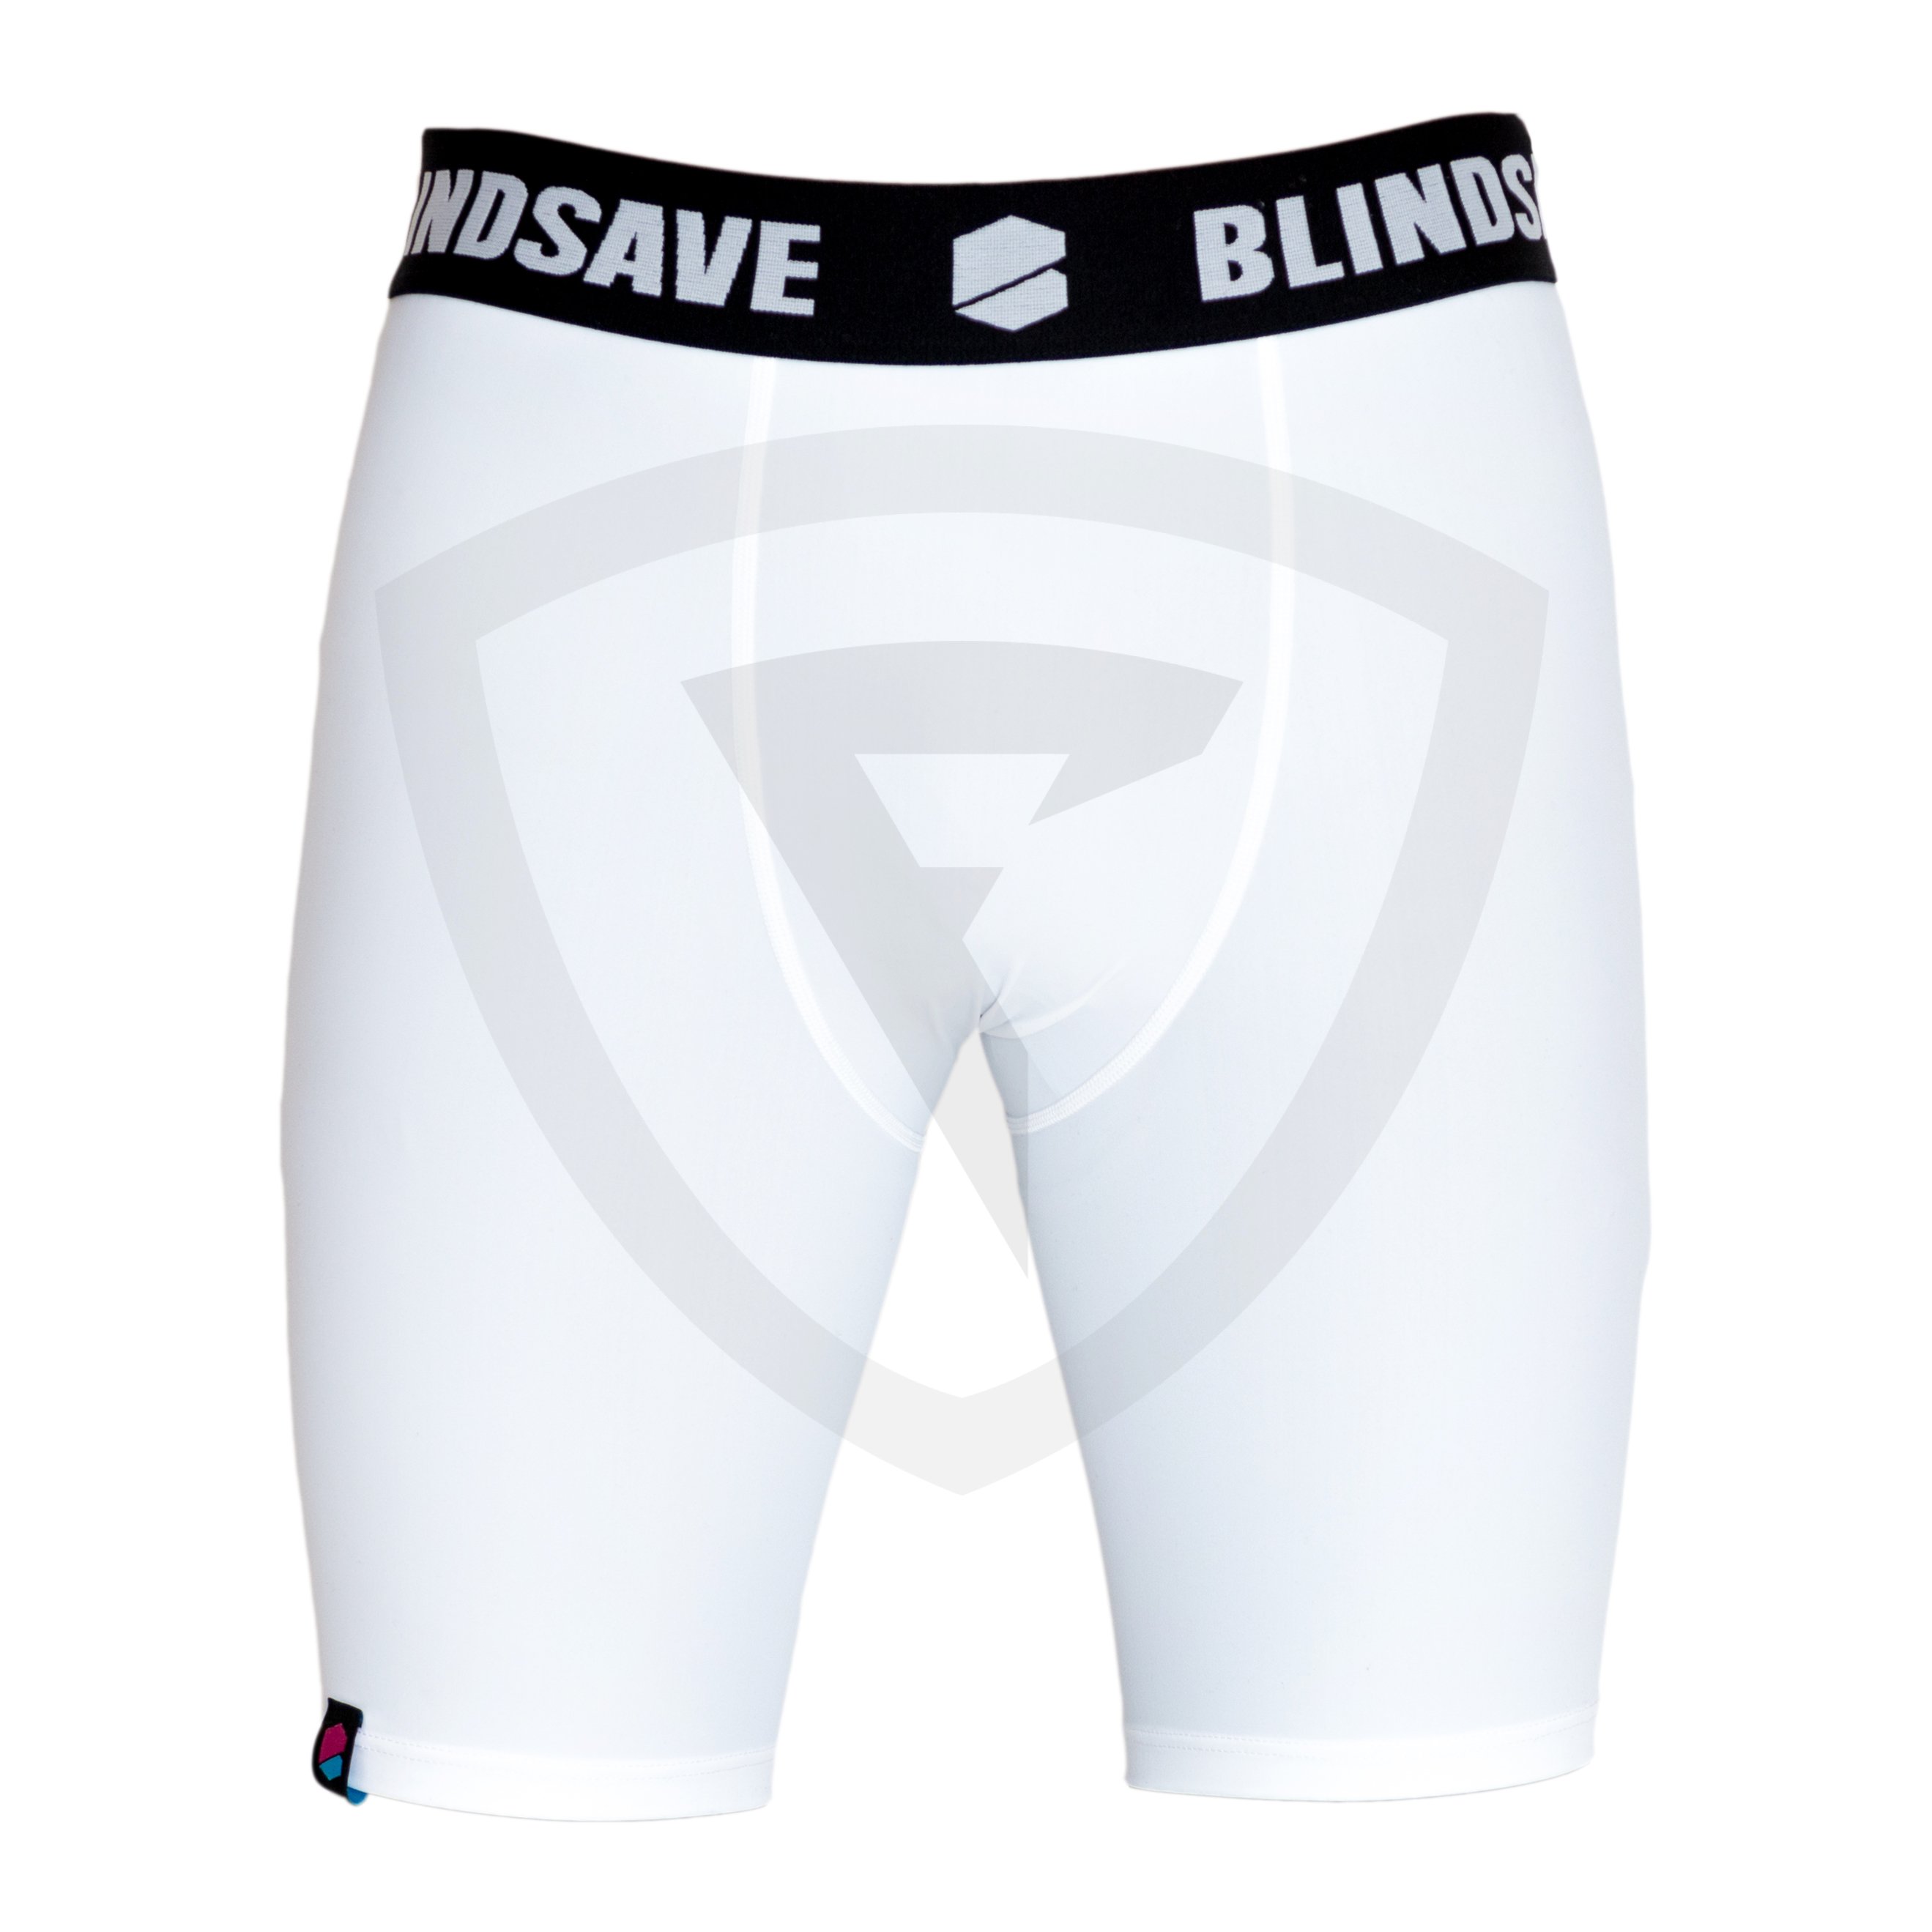 Blindsave Compression Shorts S černá